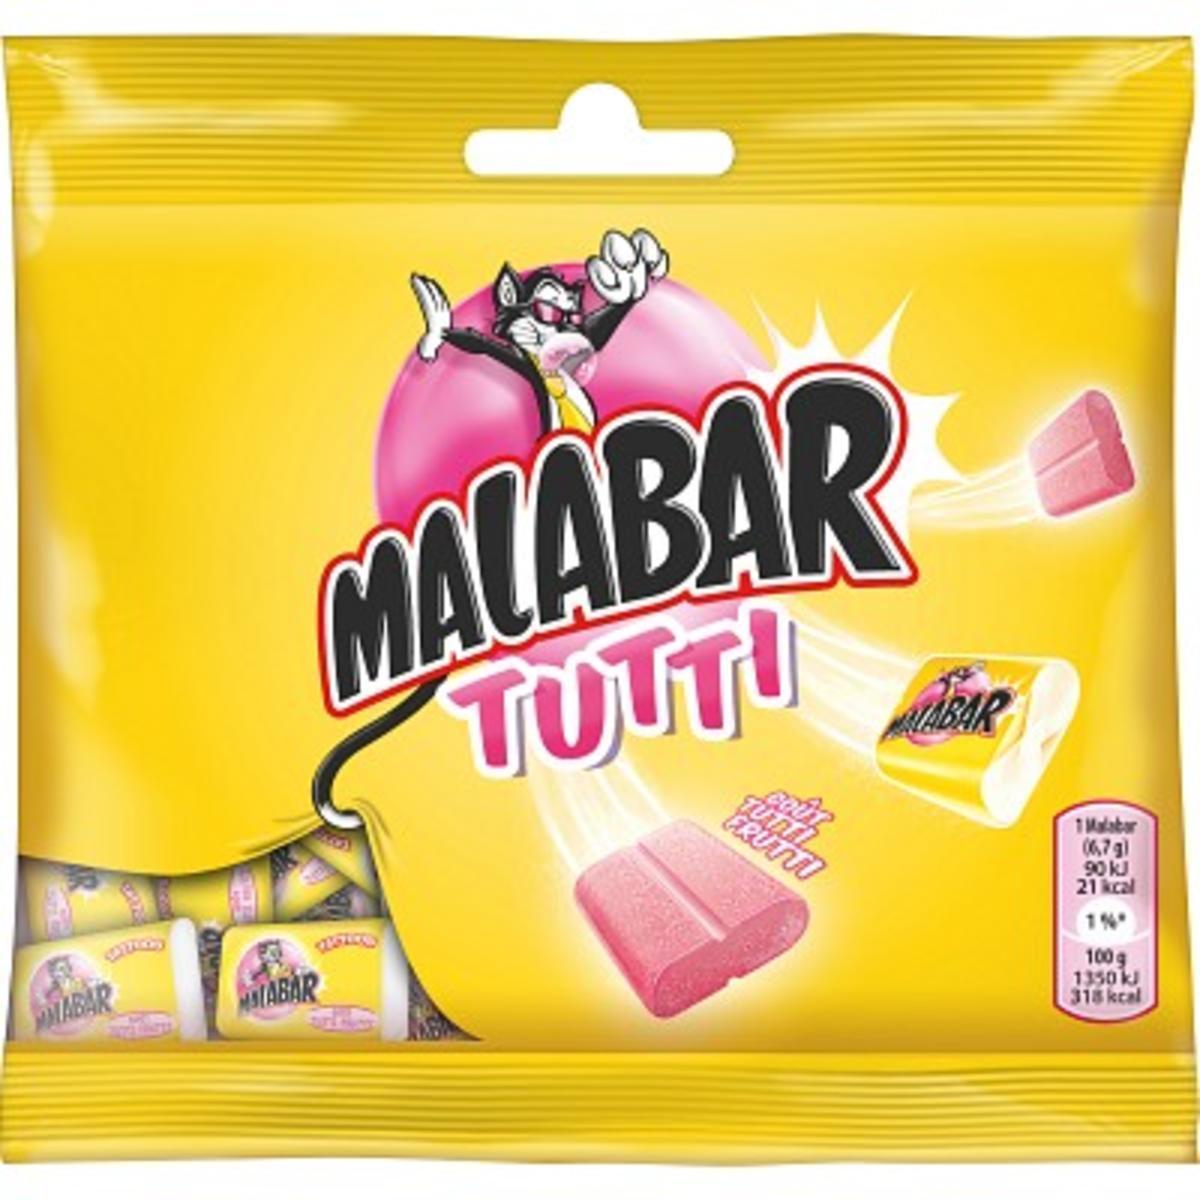 Chewing-gum Malabar - 67 g - Parfum Tutti-frutti - MALABAR